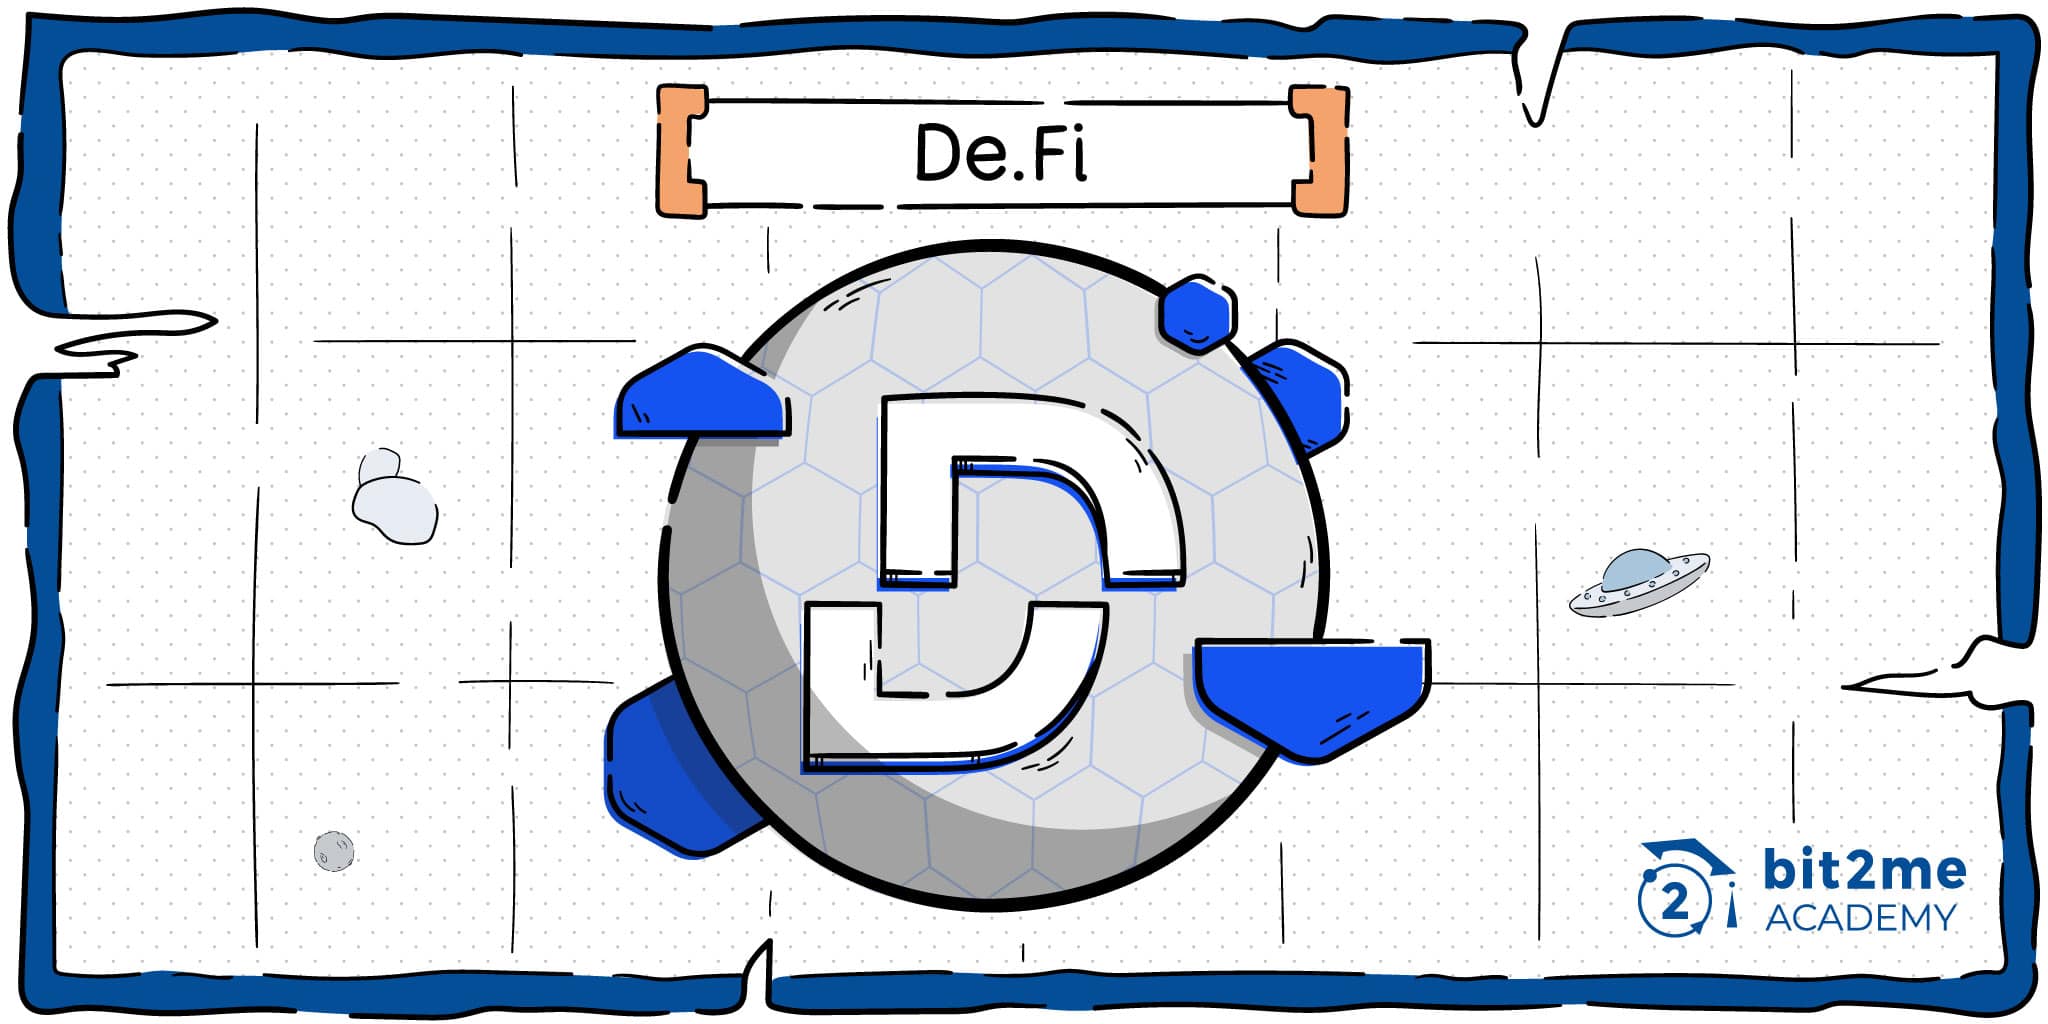 ¿Qué es De.Fi?